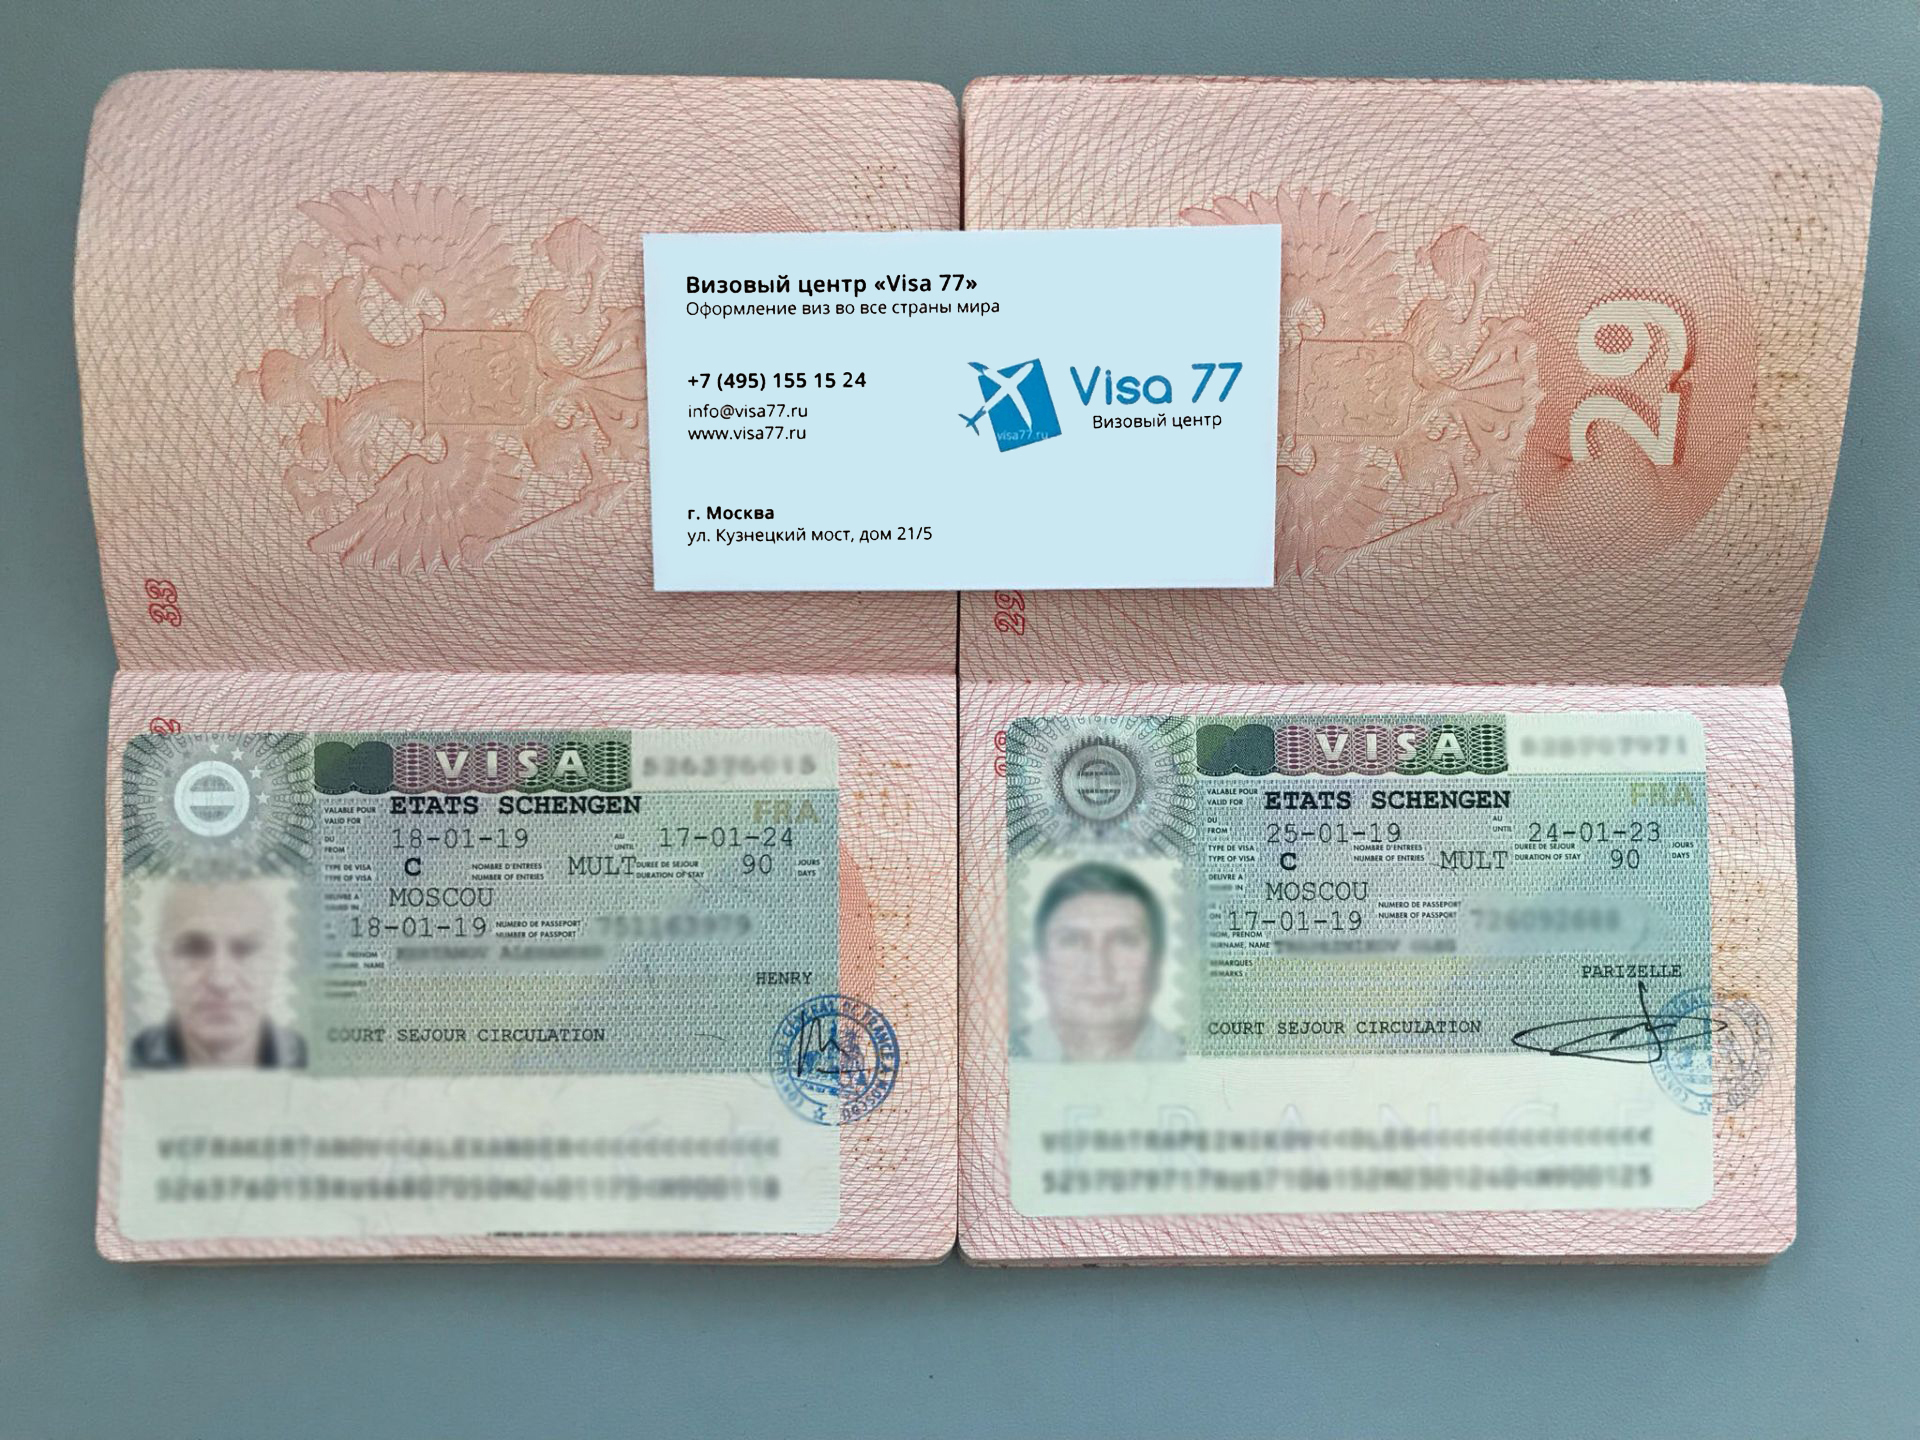 Финская виза в санкт-петербурге, получение шенгенской визы в финляндию в 2021 | visateka